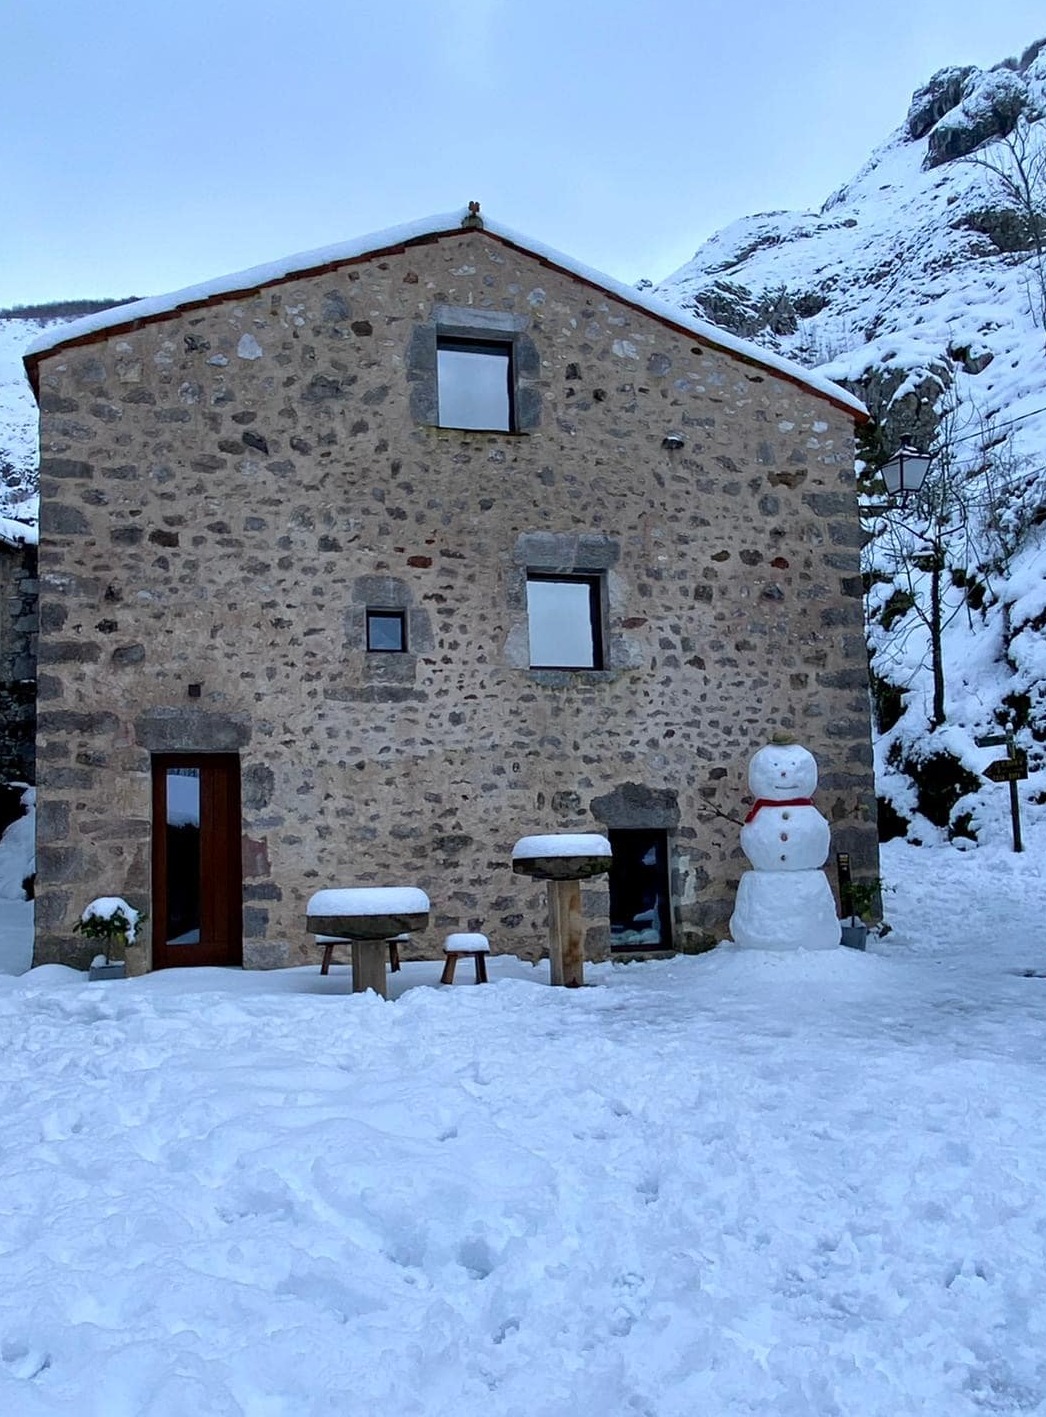 alojamiento rural La Aldea de Bulnes - exterior casa rústica con nieve - Picos de Europa